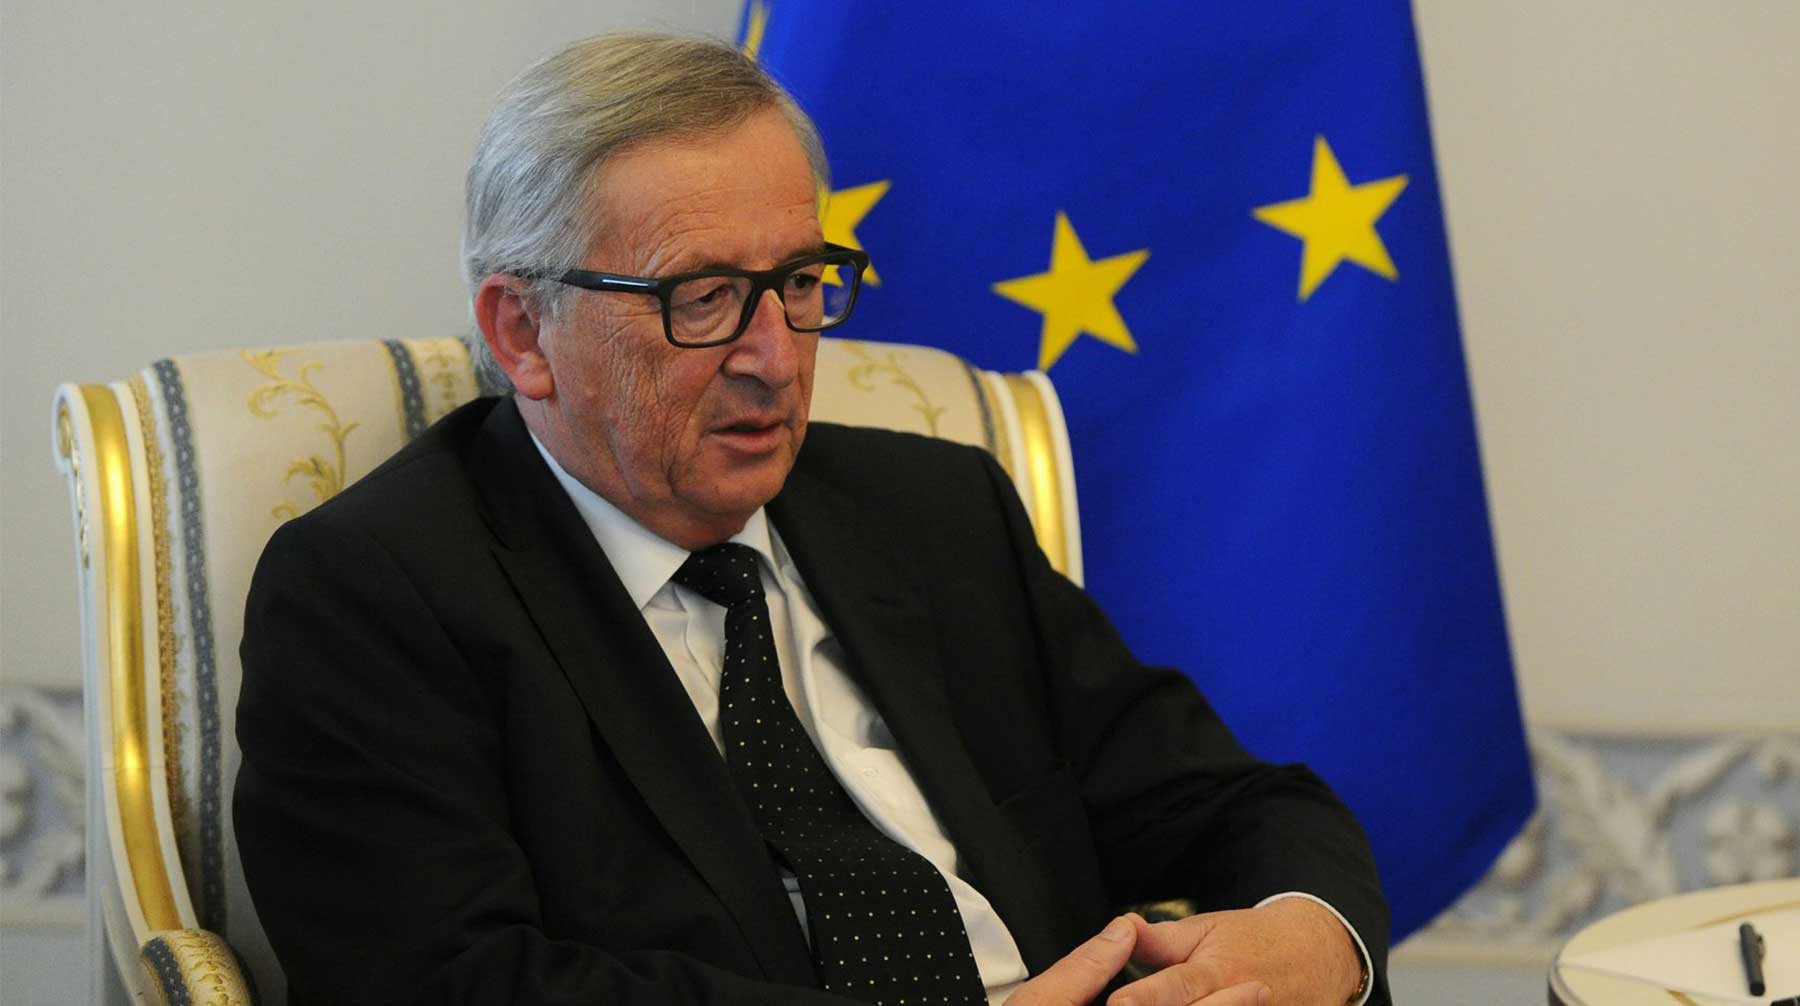 Dailystorm - Глава Еврокомиссии сравнил ситуацию в Польше с эпохой Второй мировой войны